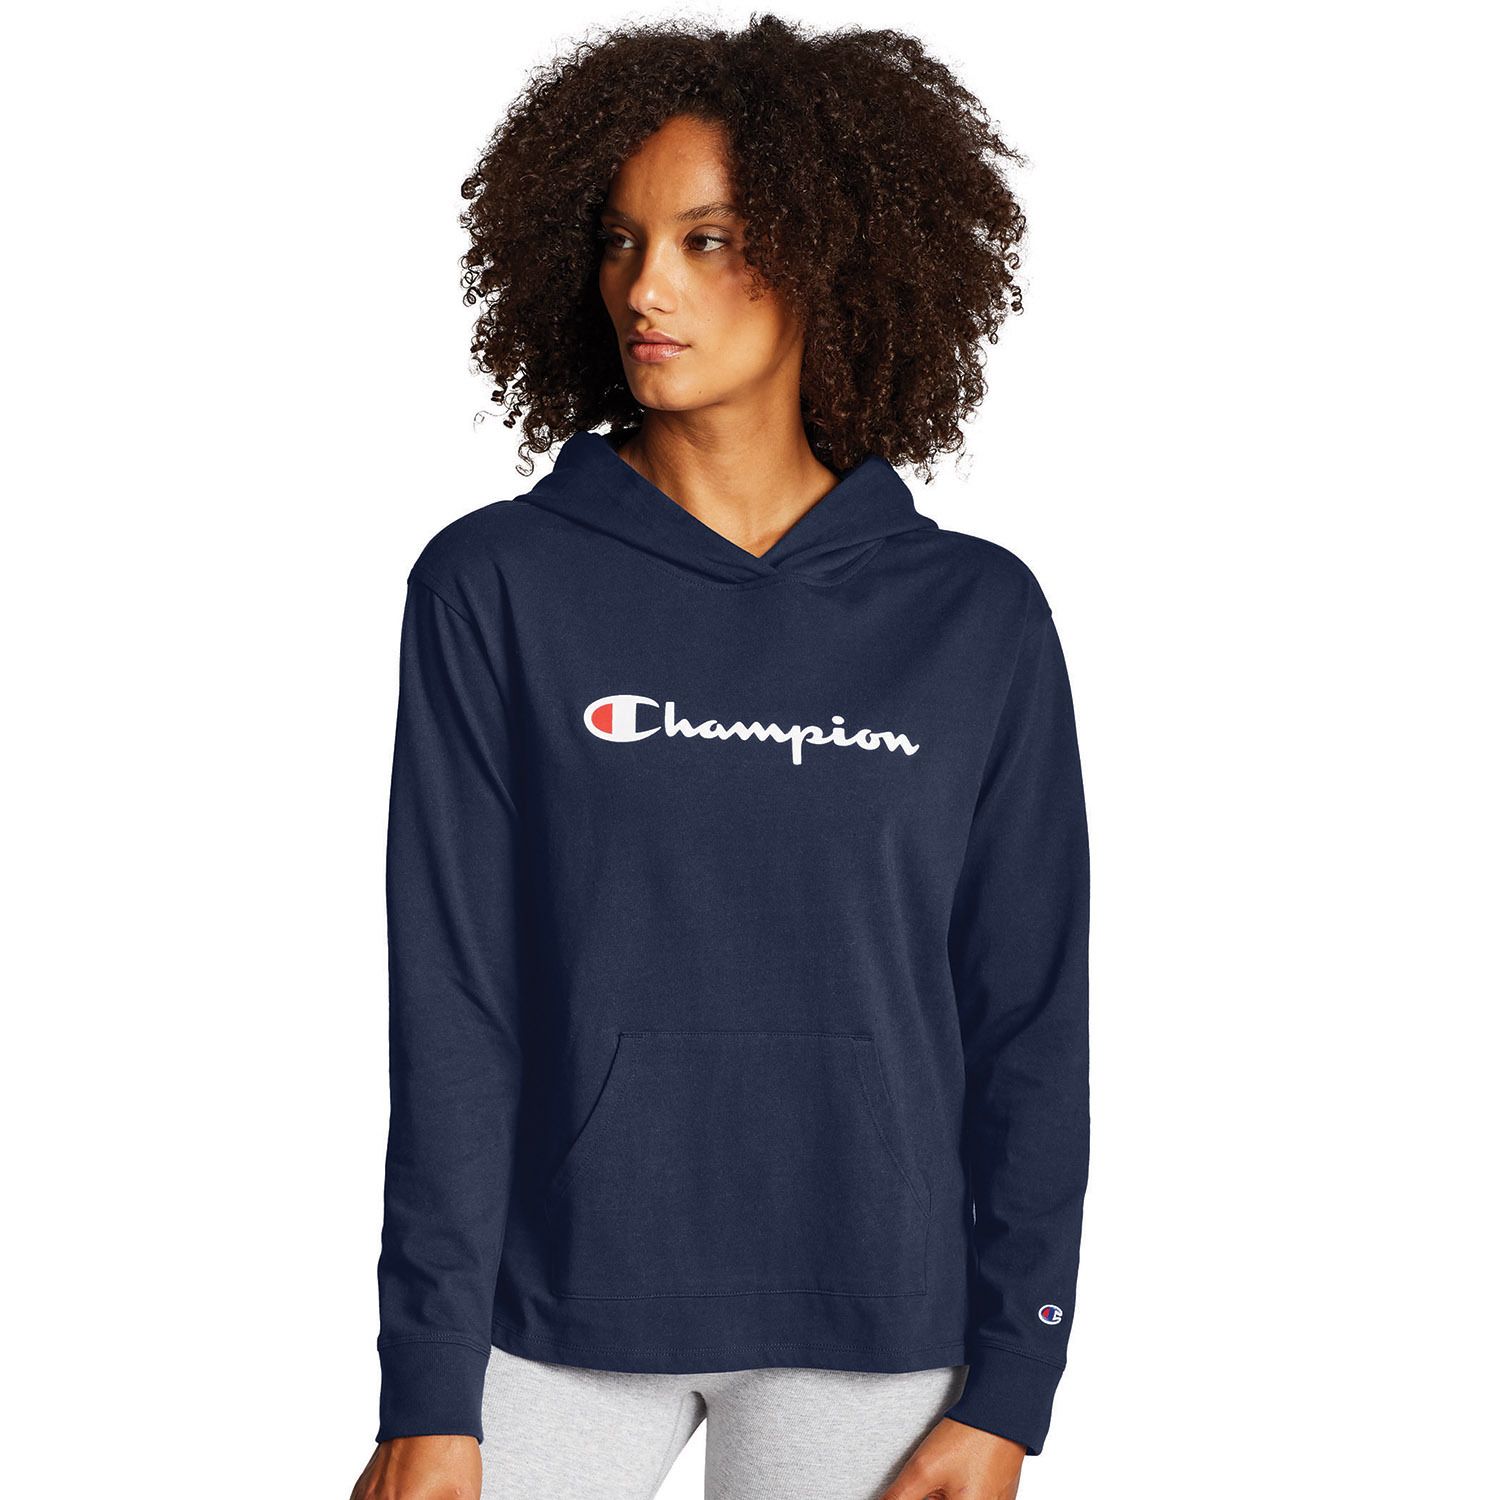 women's champion hoodie